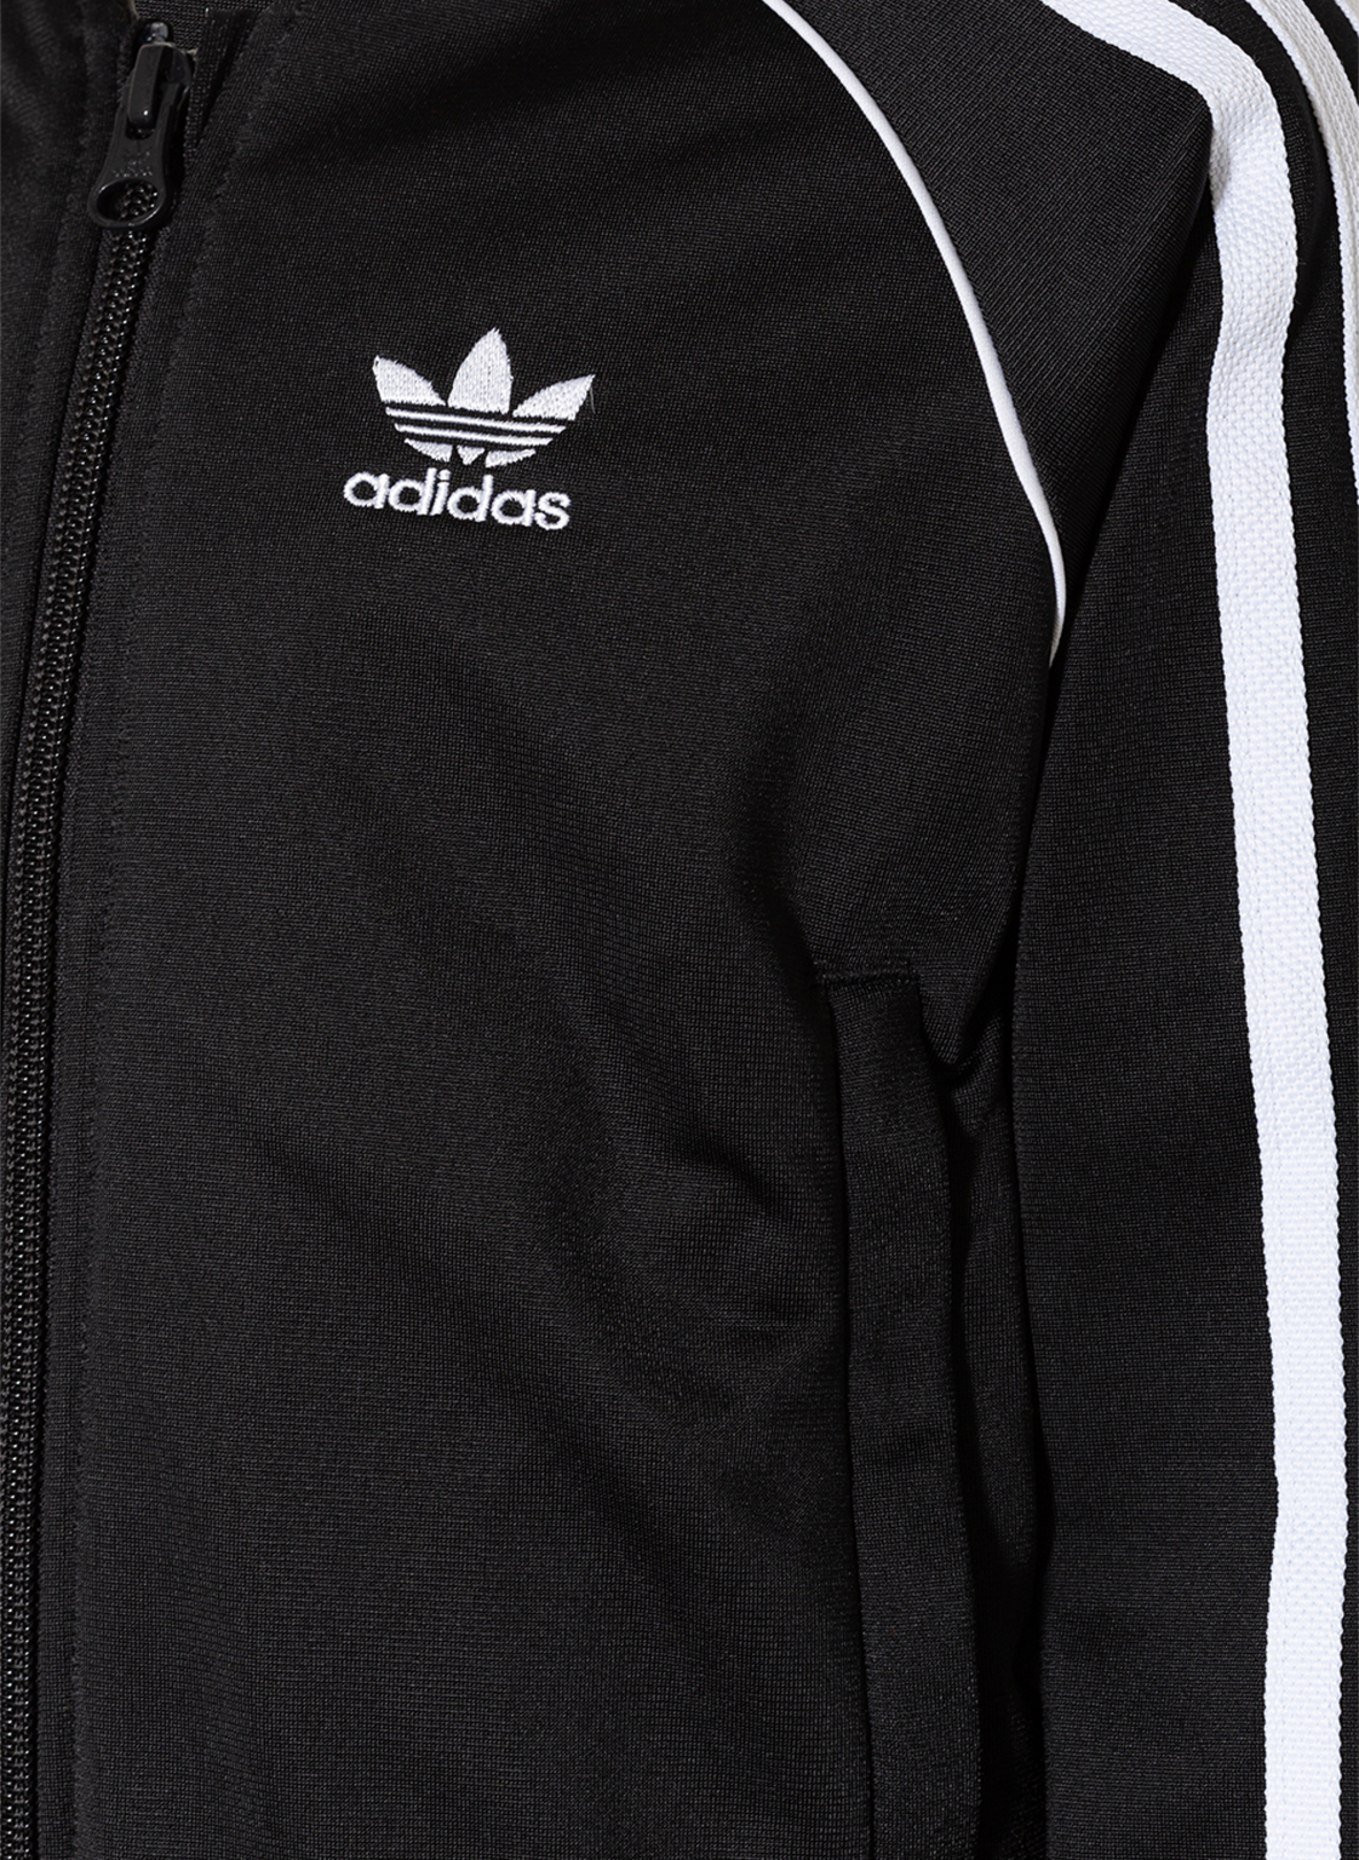 adidas Originals Trainingsanzug mit Galonstreifen in schwarz/ weiss